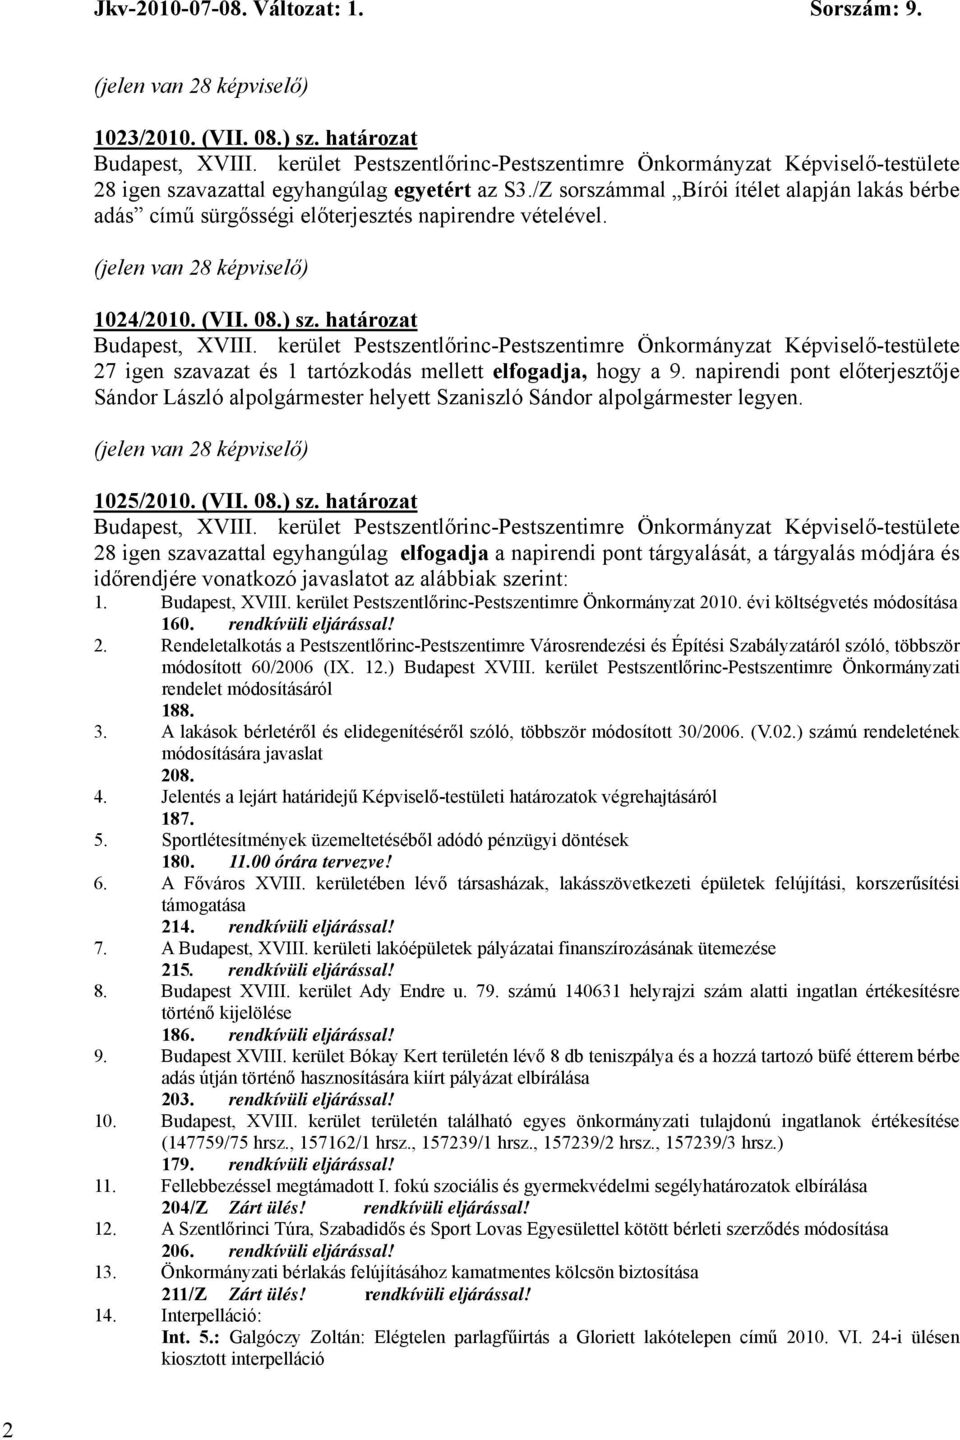 határozat 27 igen szavazat és 1 tartózkodás mellett elfogadja, hogy a 9. napirendi pont előterjesztője Sándor László alpolgármester helyett Szaniszló Sándor alpolgármester legyen.